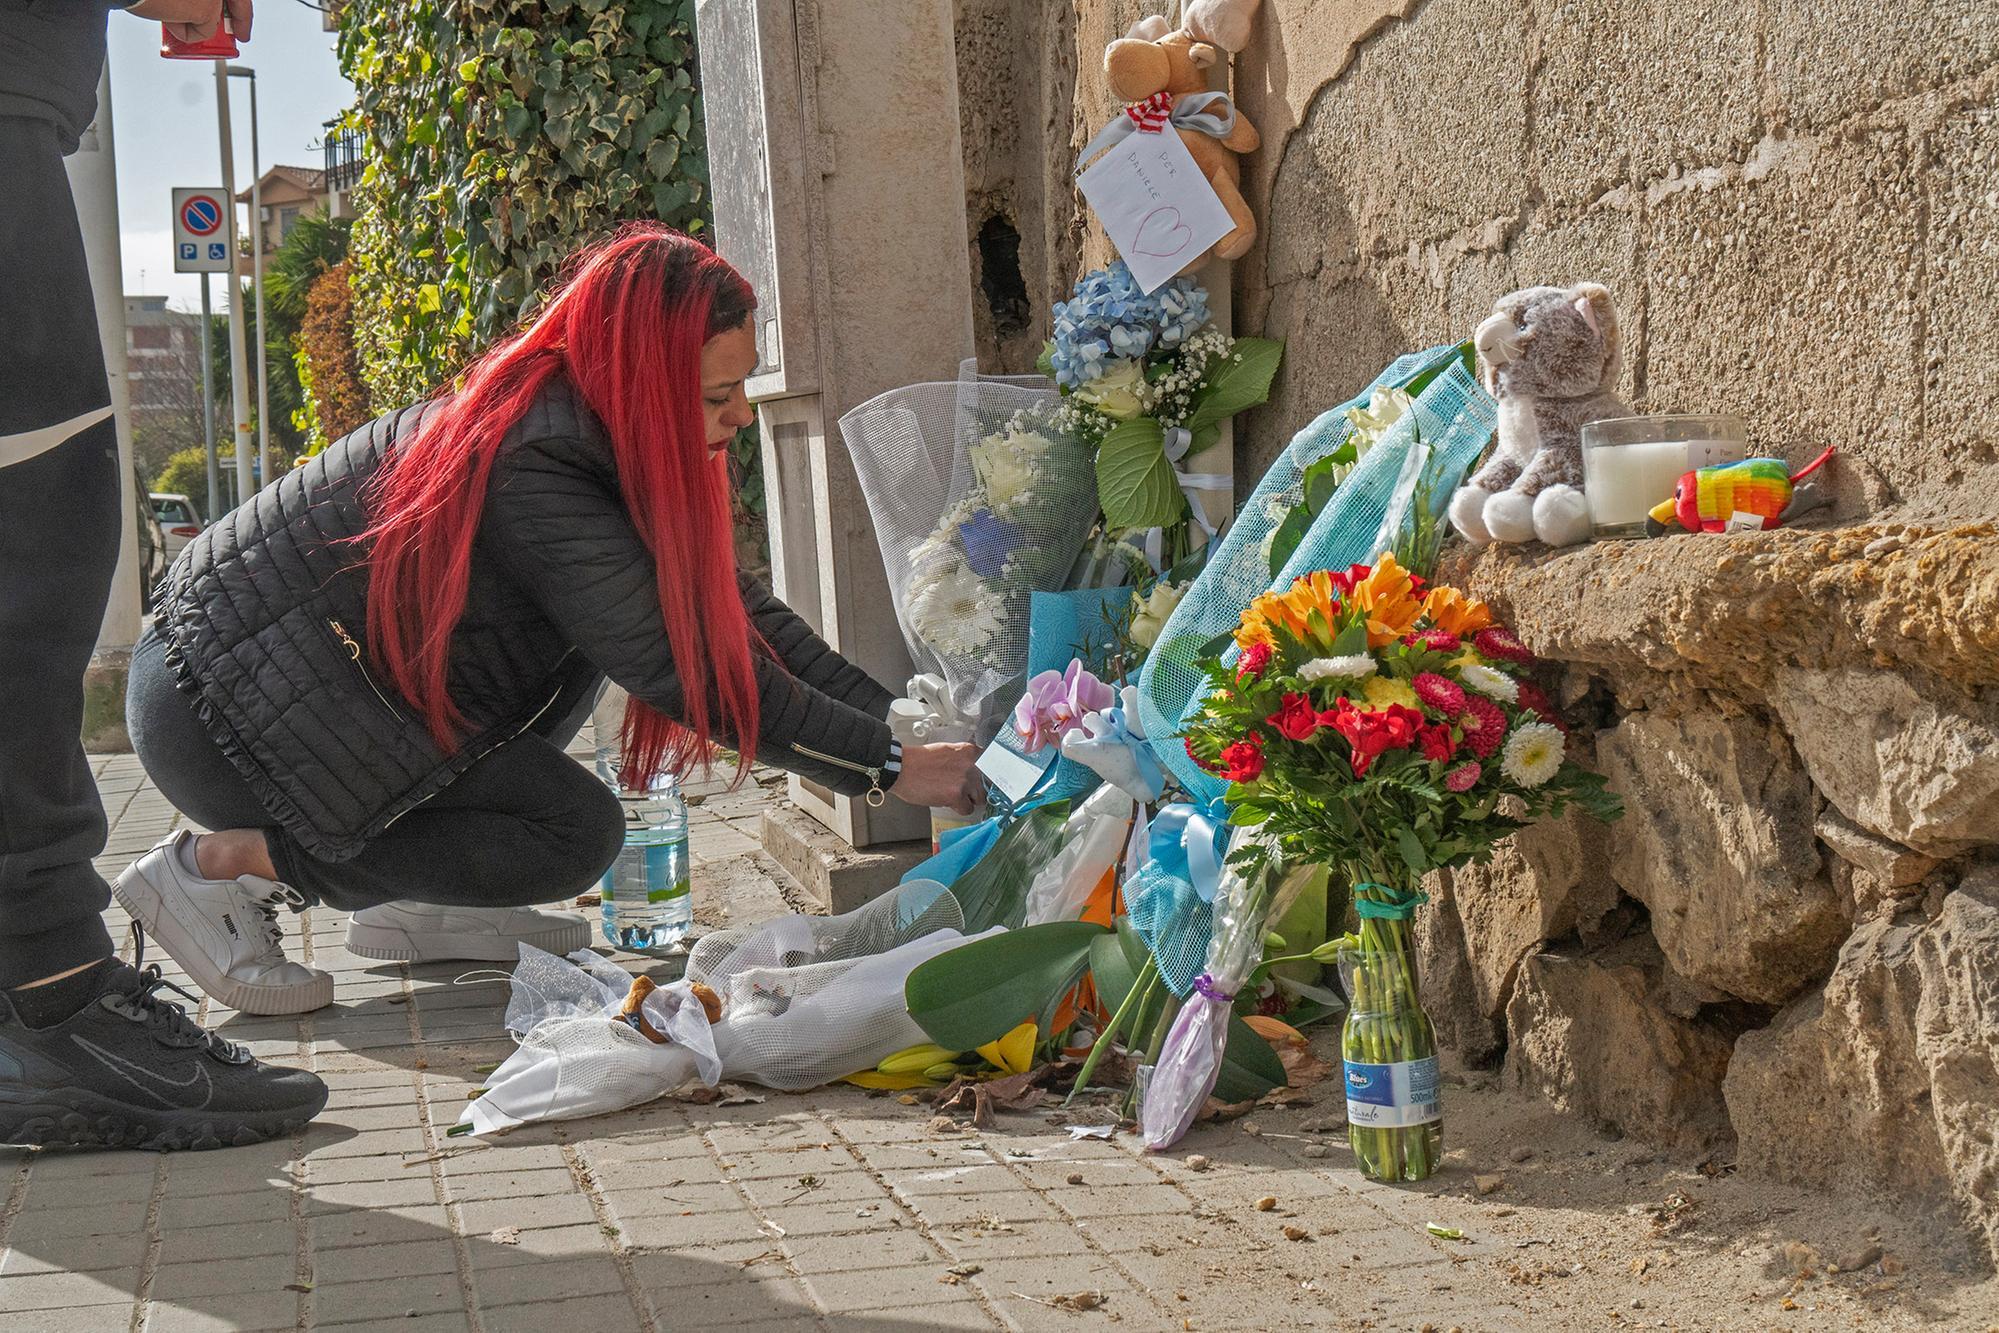 Bimbo travolto e ucciso in via Cadello, lo scooterista guidava sotto l’effetto di droghe (archivio L'Unione Sarda)